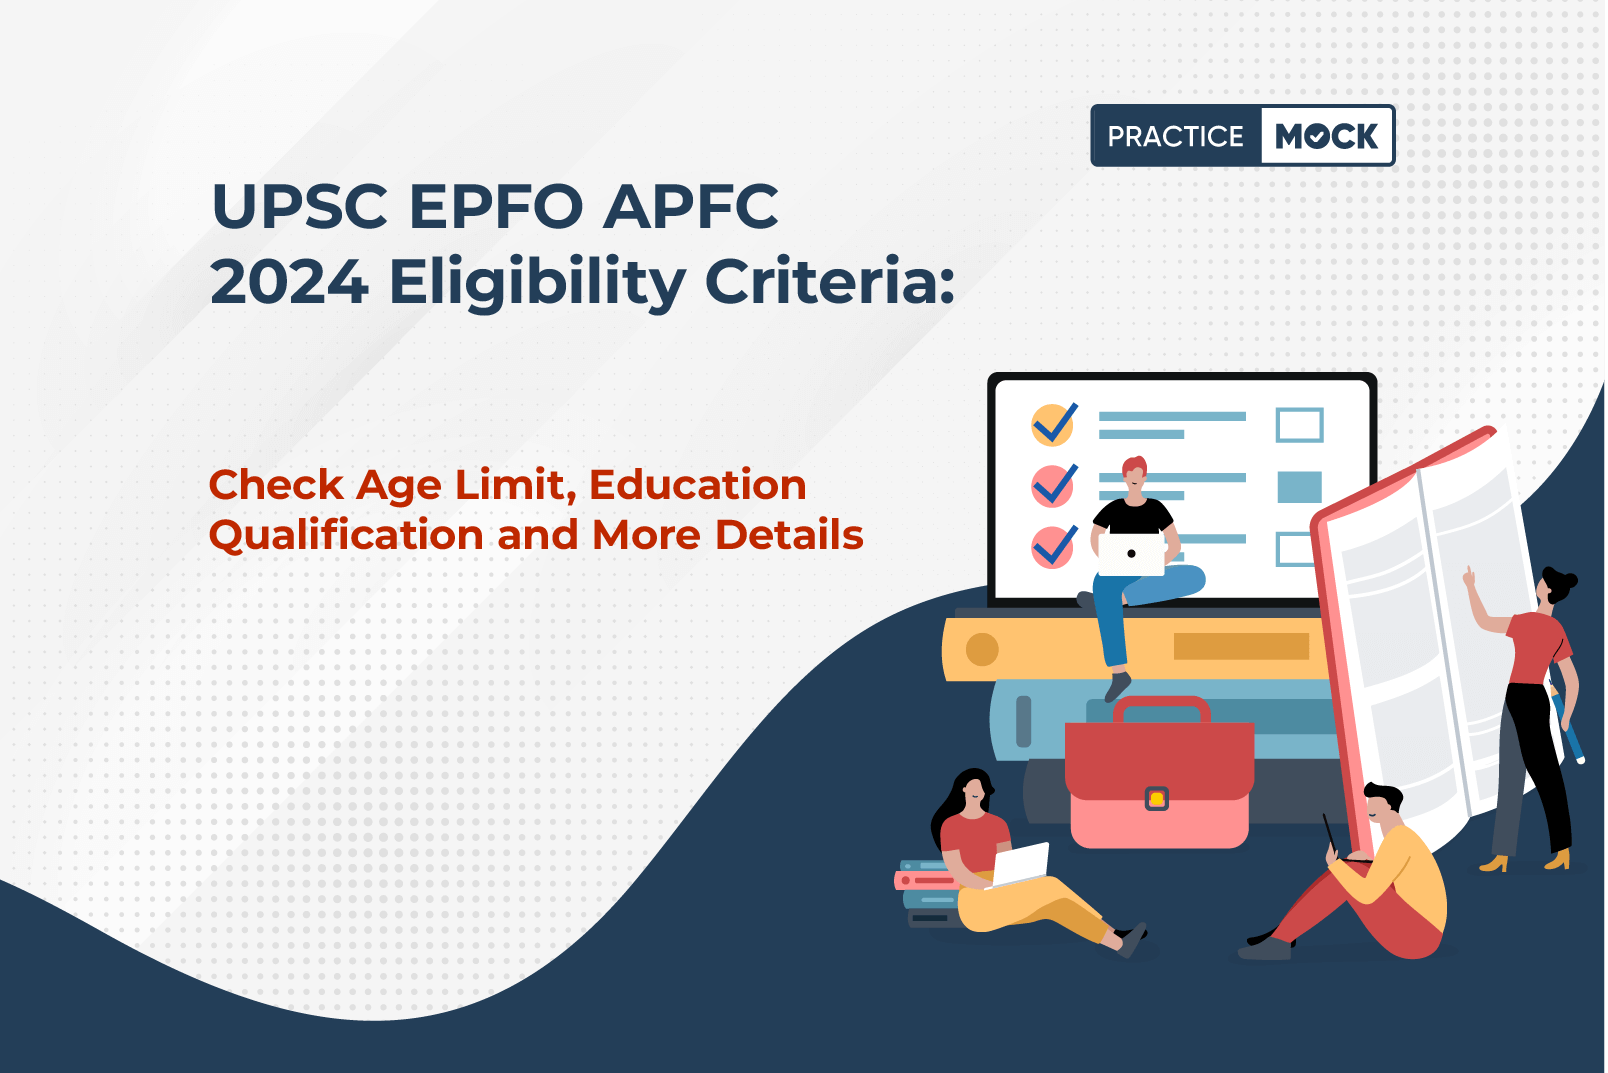 UPSC EPFO APFC 2024 Eligibility Criteria